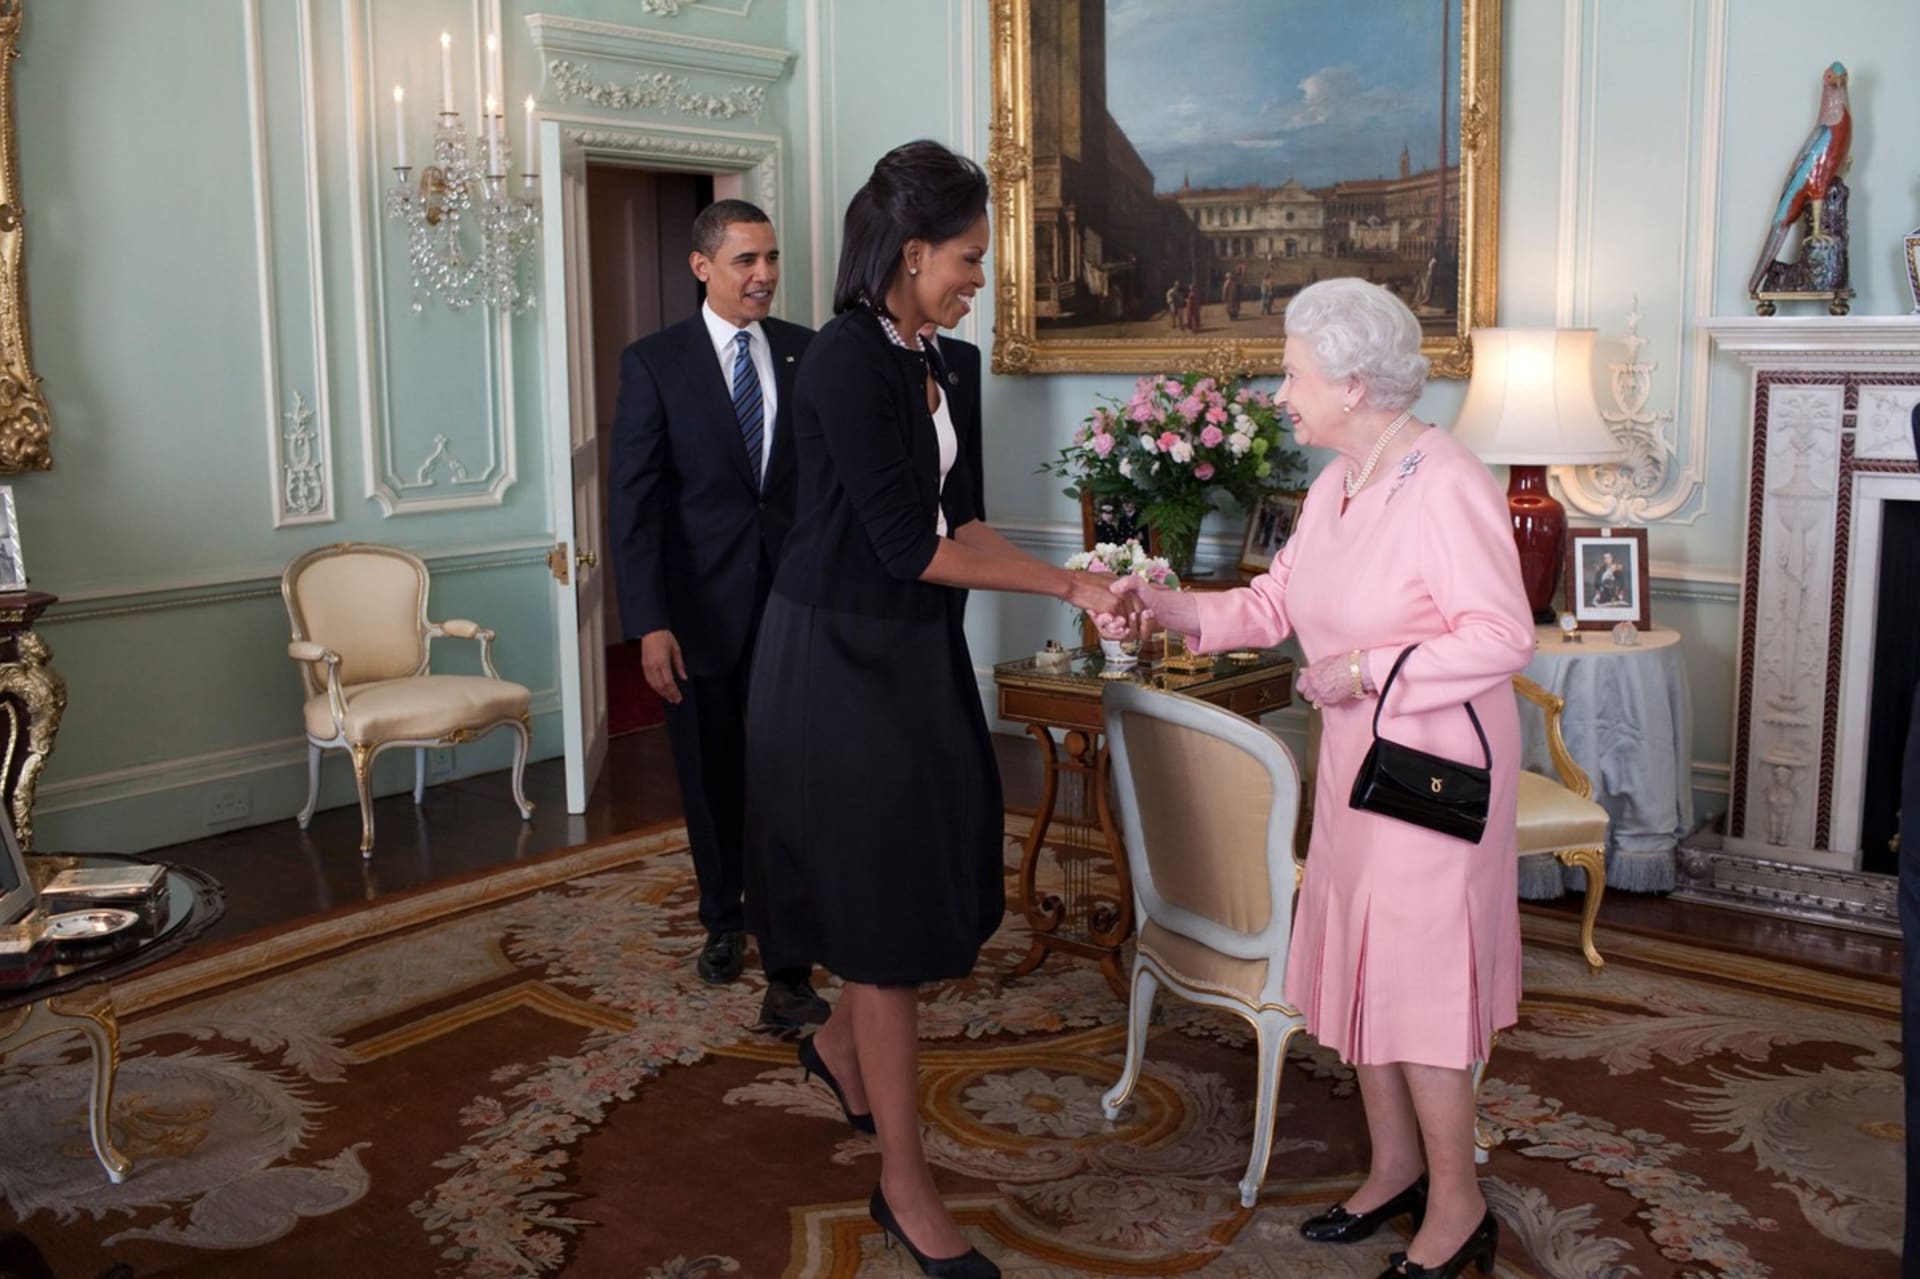 Bývalá první dáma MichelleObamovápři setkání s královnouAlžbětou II. ji během hovoru objala.